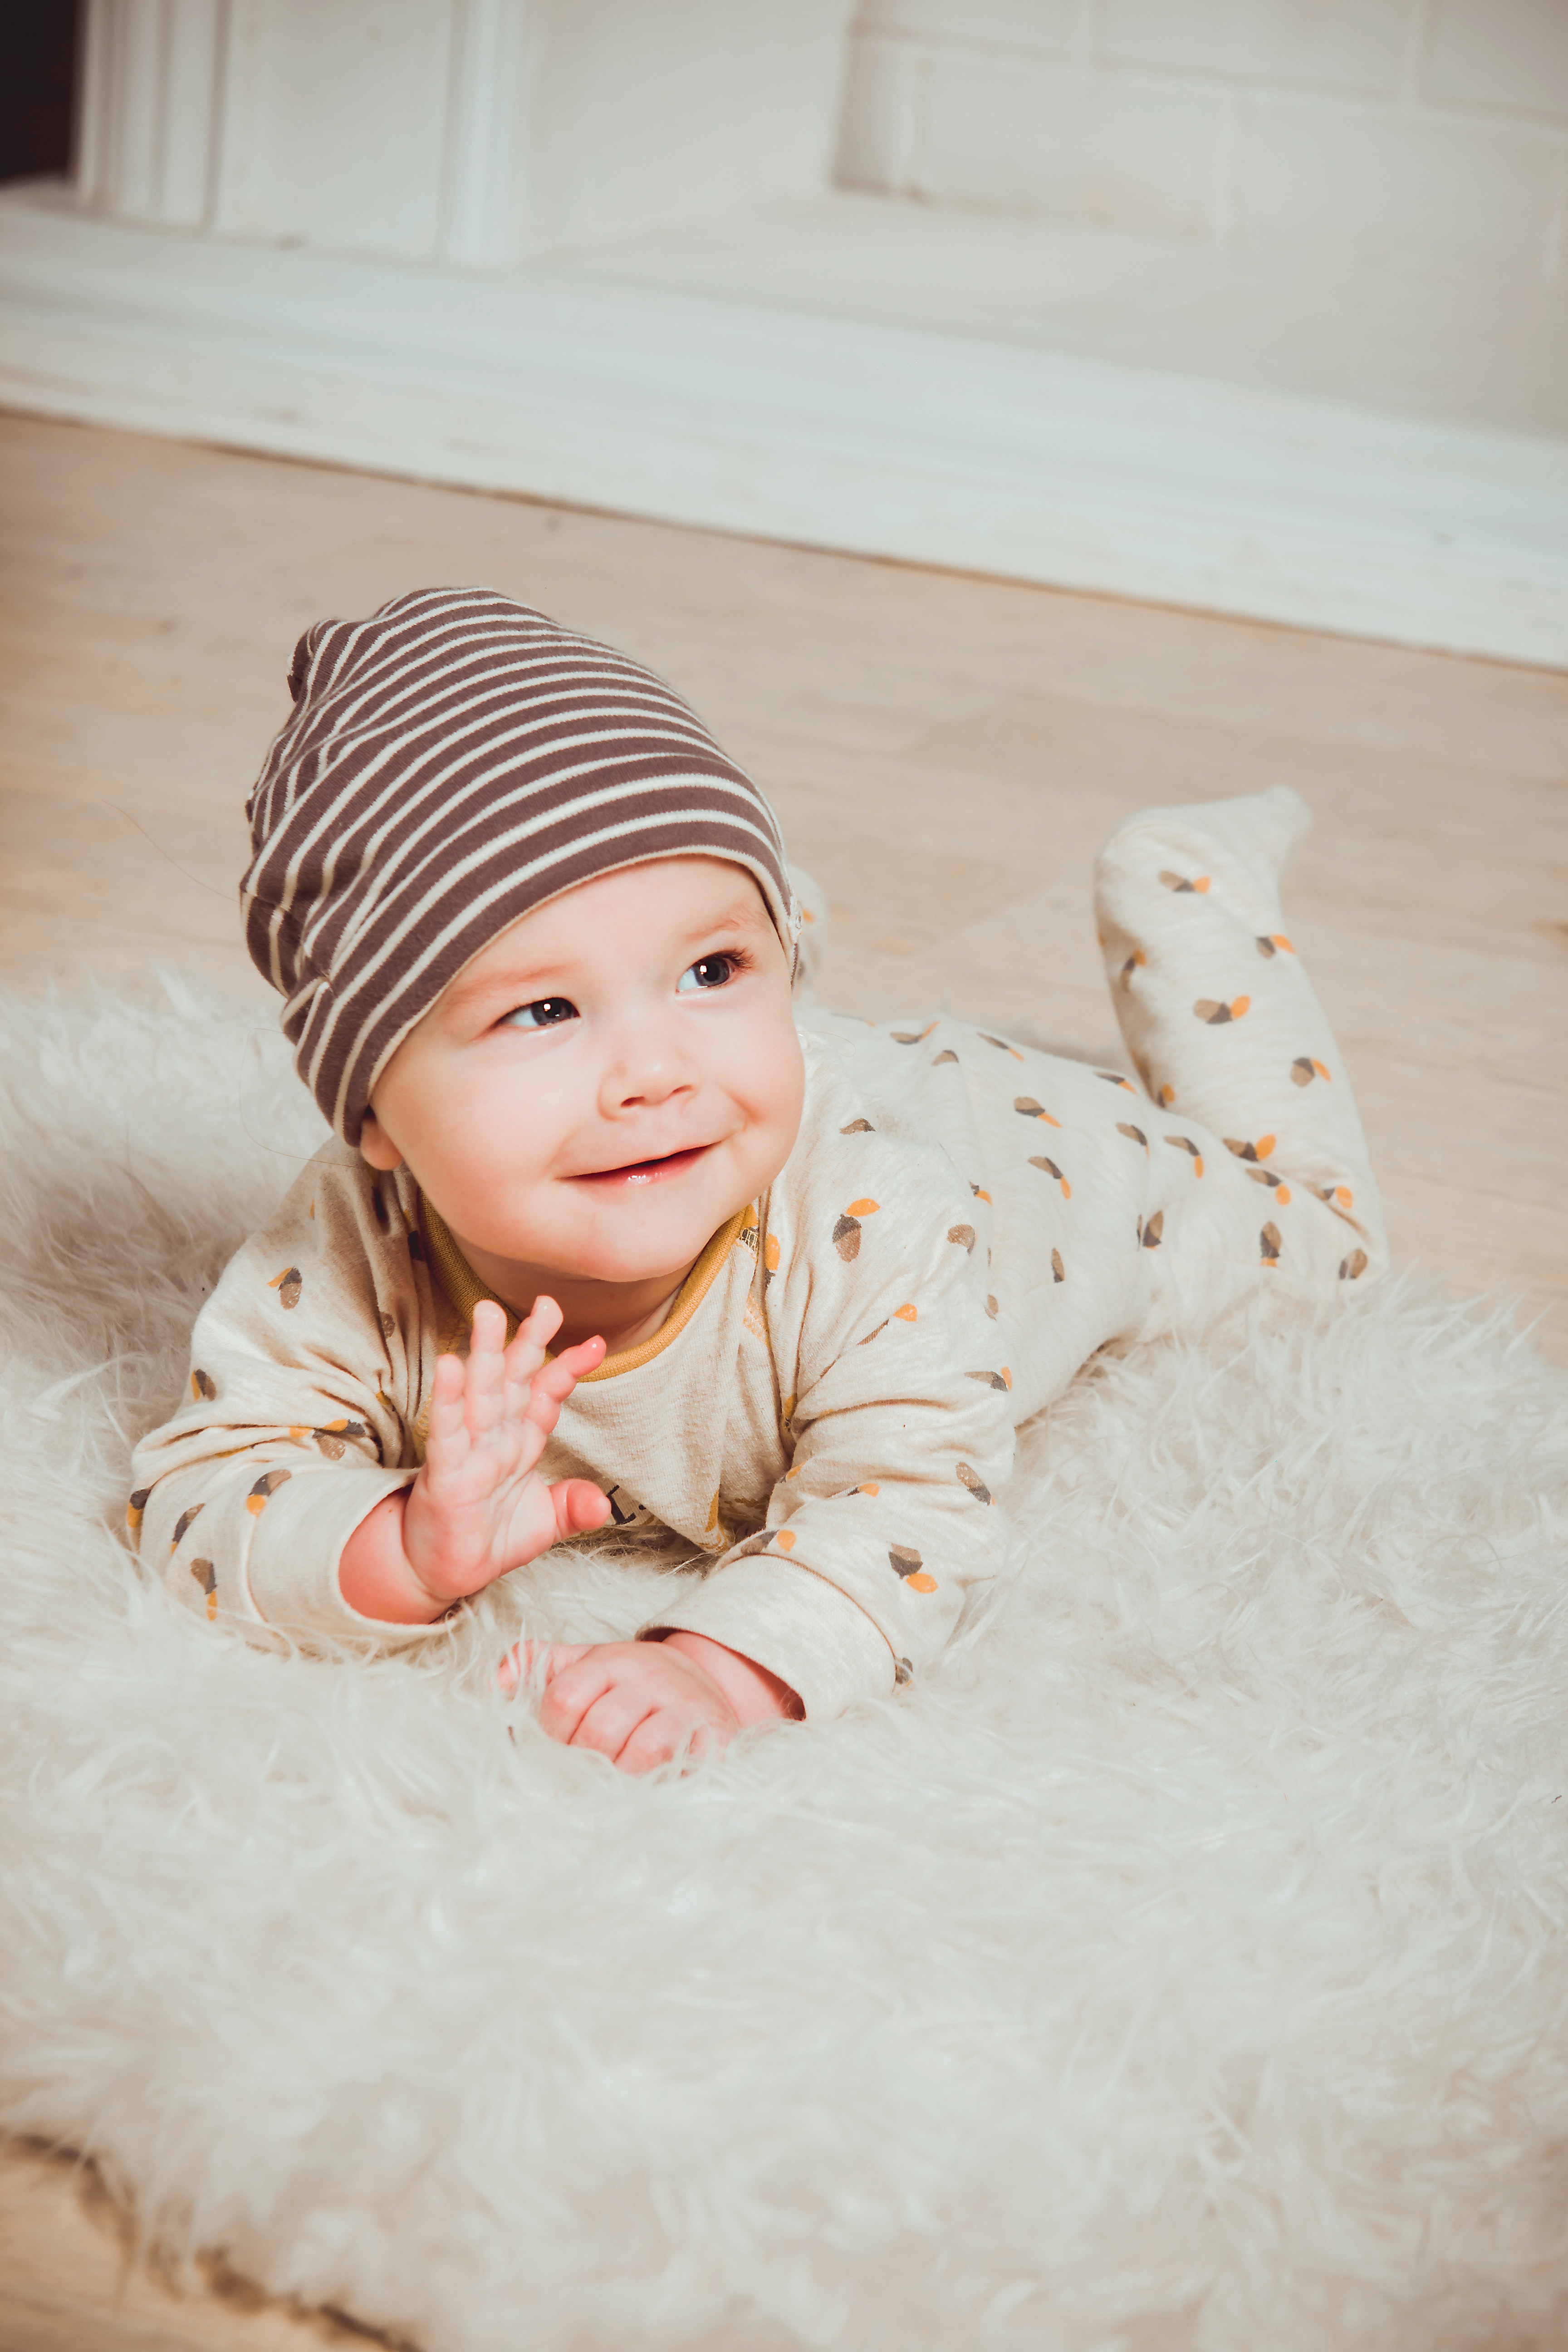 Kinderbetreuung Thun: Glückliches Baby in Bauchlage auf Fell